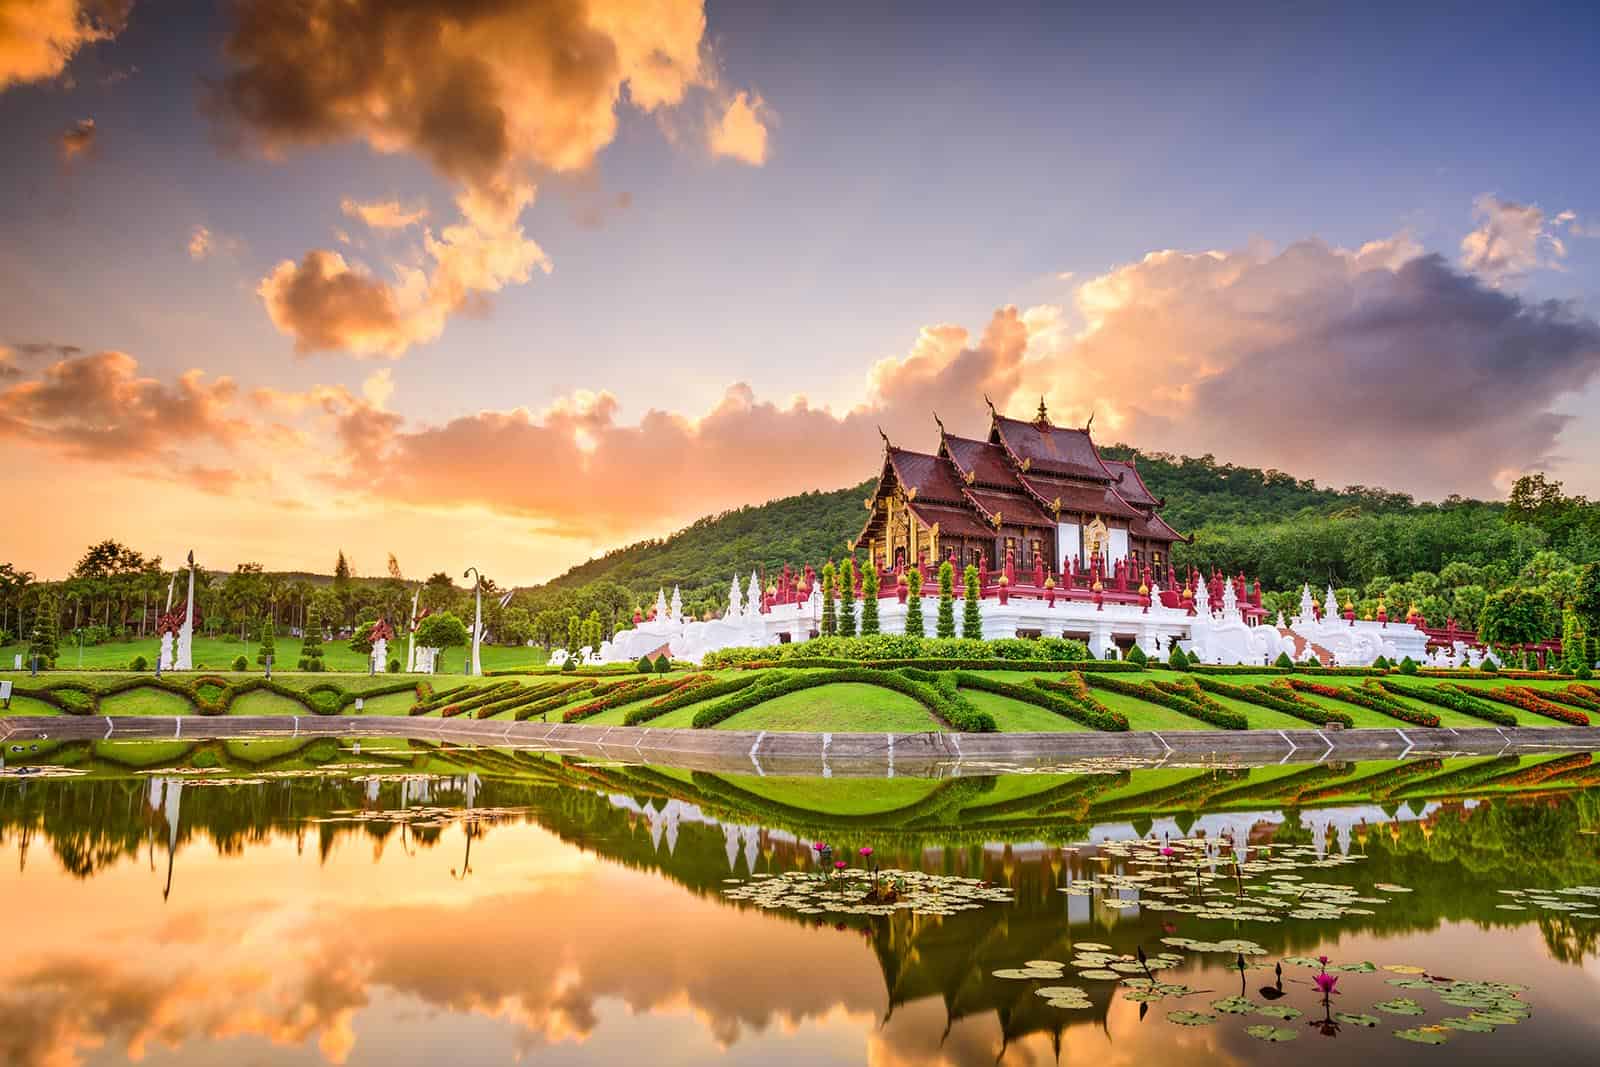 Với kinh nghiệm du lịch của Combo Nghỉ Dưỡng, hãy cùng điểm qua các địa điểm ăn uống, vui chơi giải trí nổi tiếng, hấp dẫn ở Chiang Mai có gì